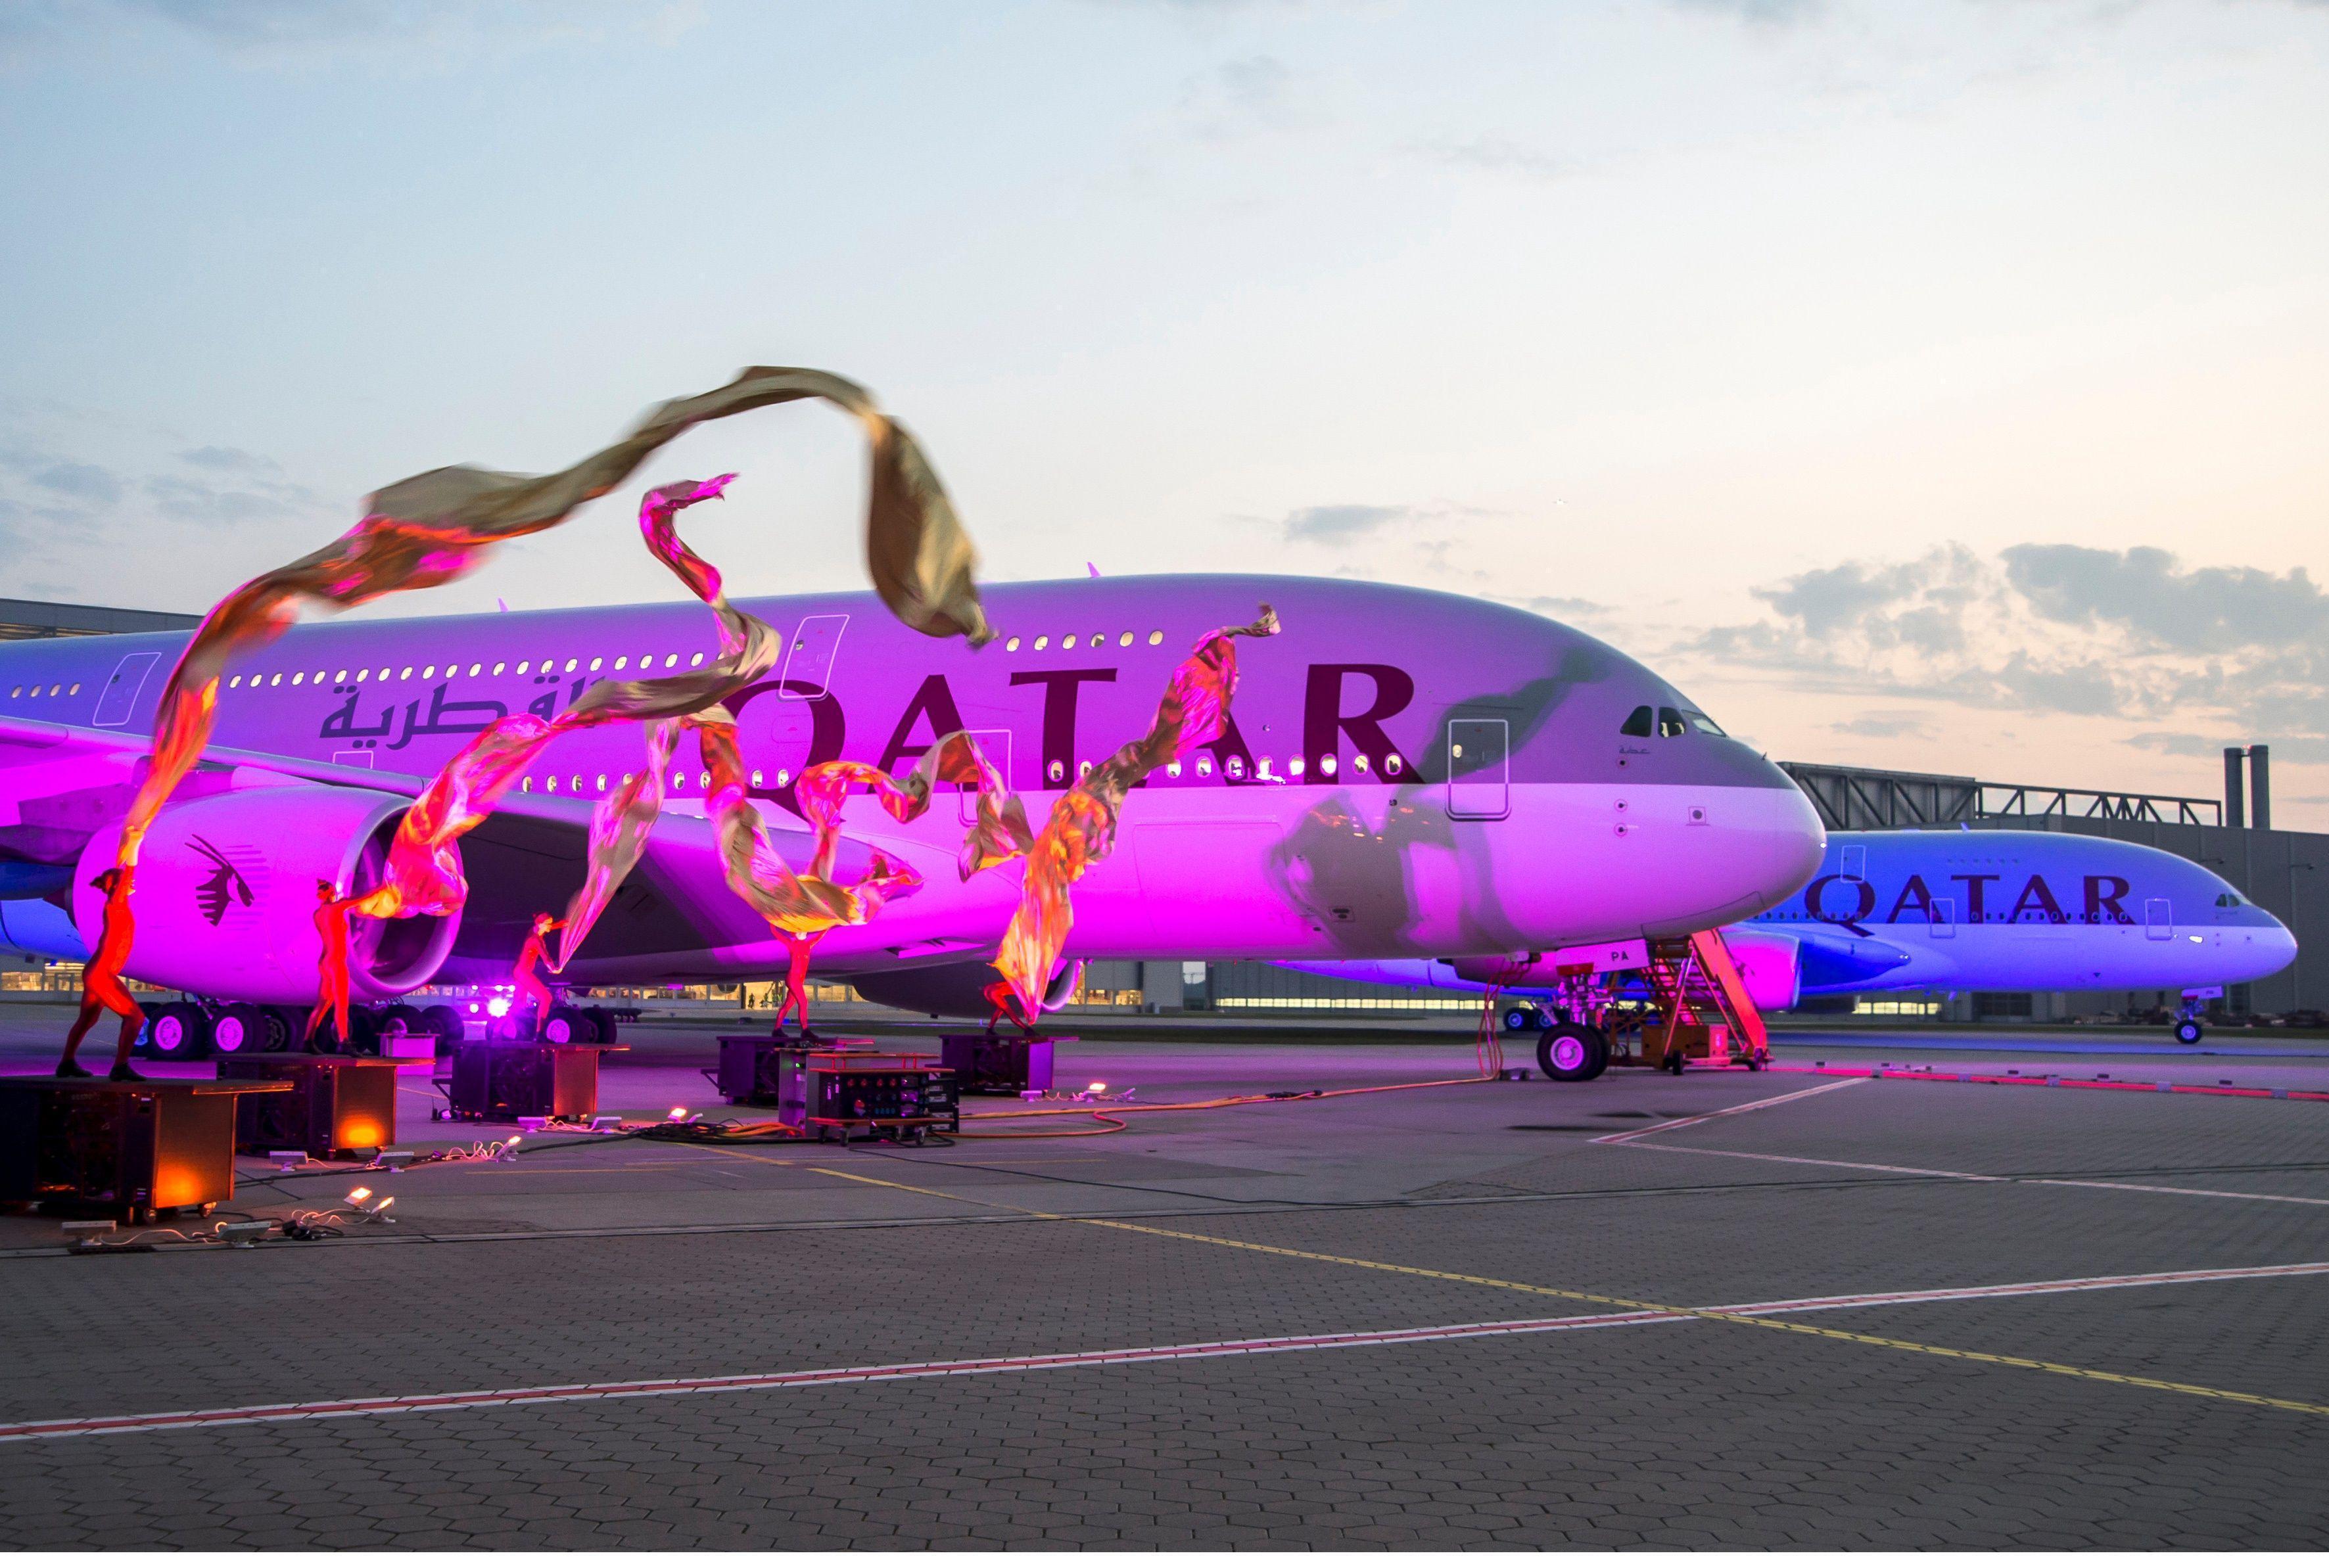 Qatar_Airways_A380 800_Delivery_Ceremony. Qatar Airways Airlines